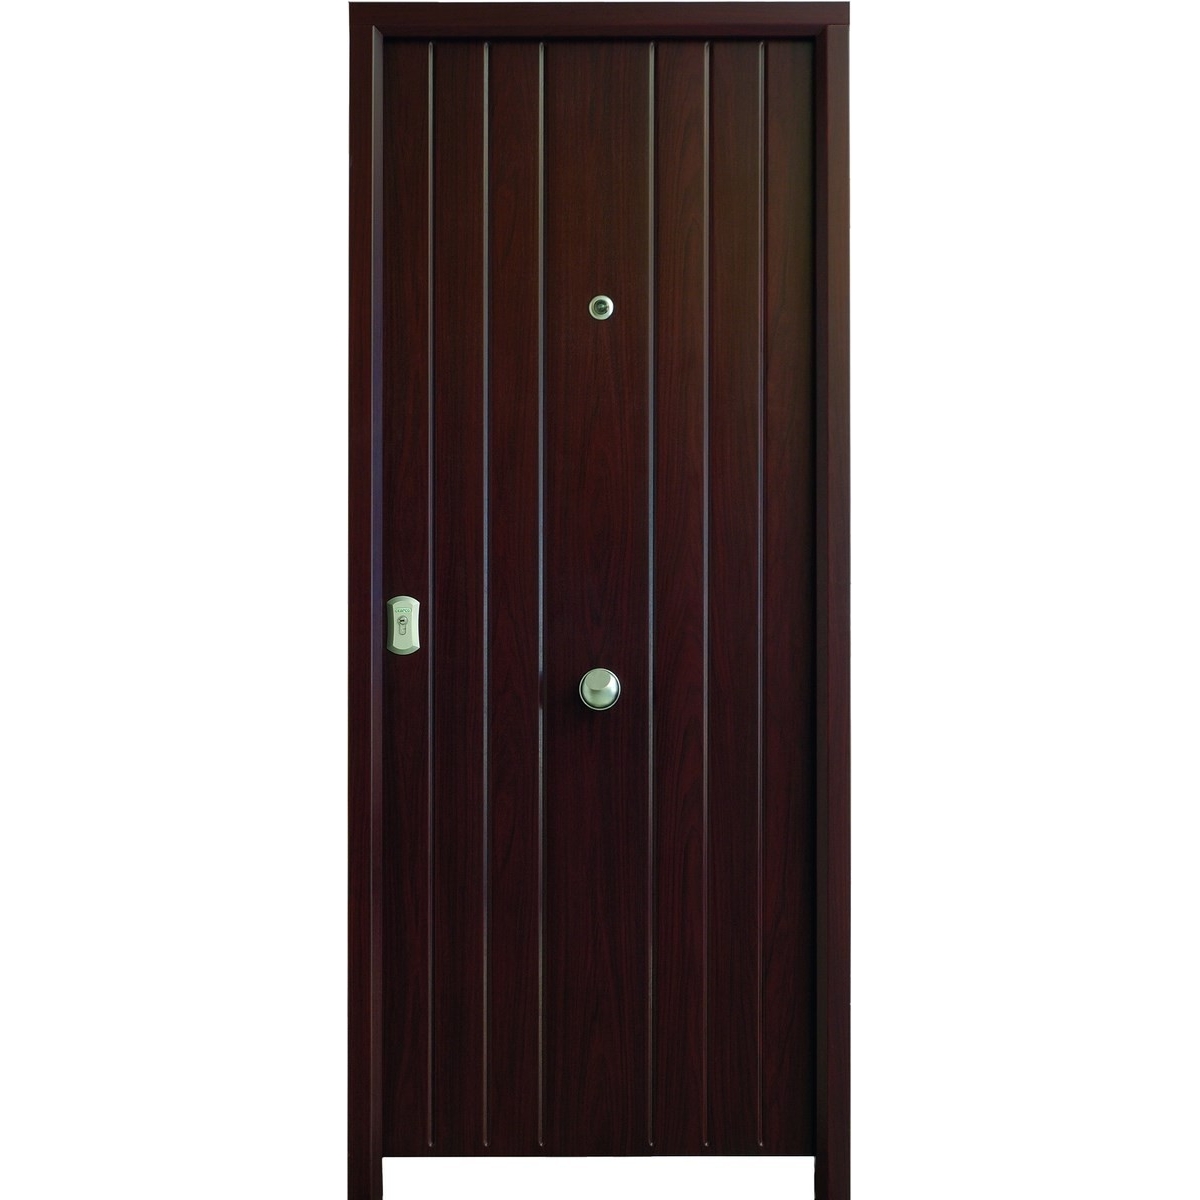 Porta blindada Cibeles - Portas blindadas Série B4-BL - Marca Cearco